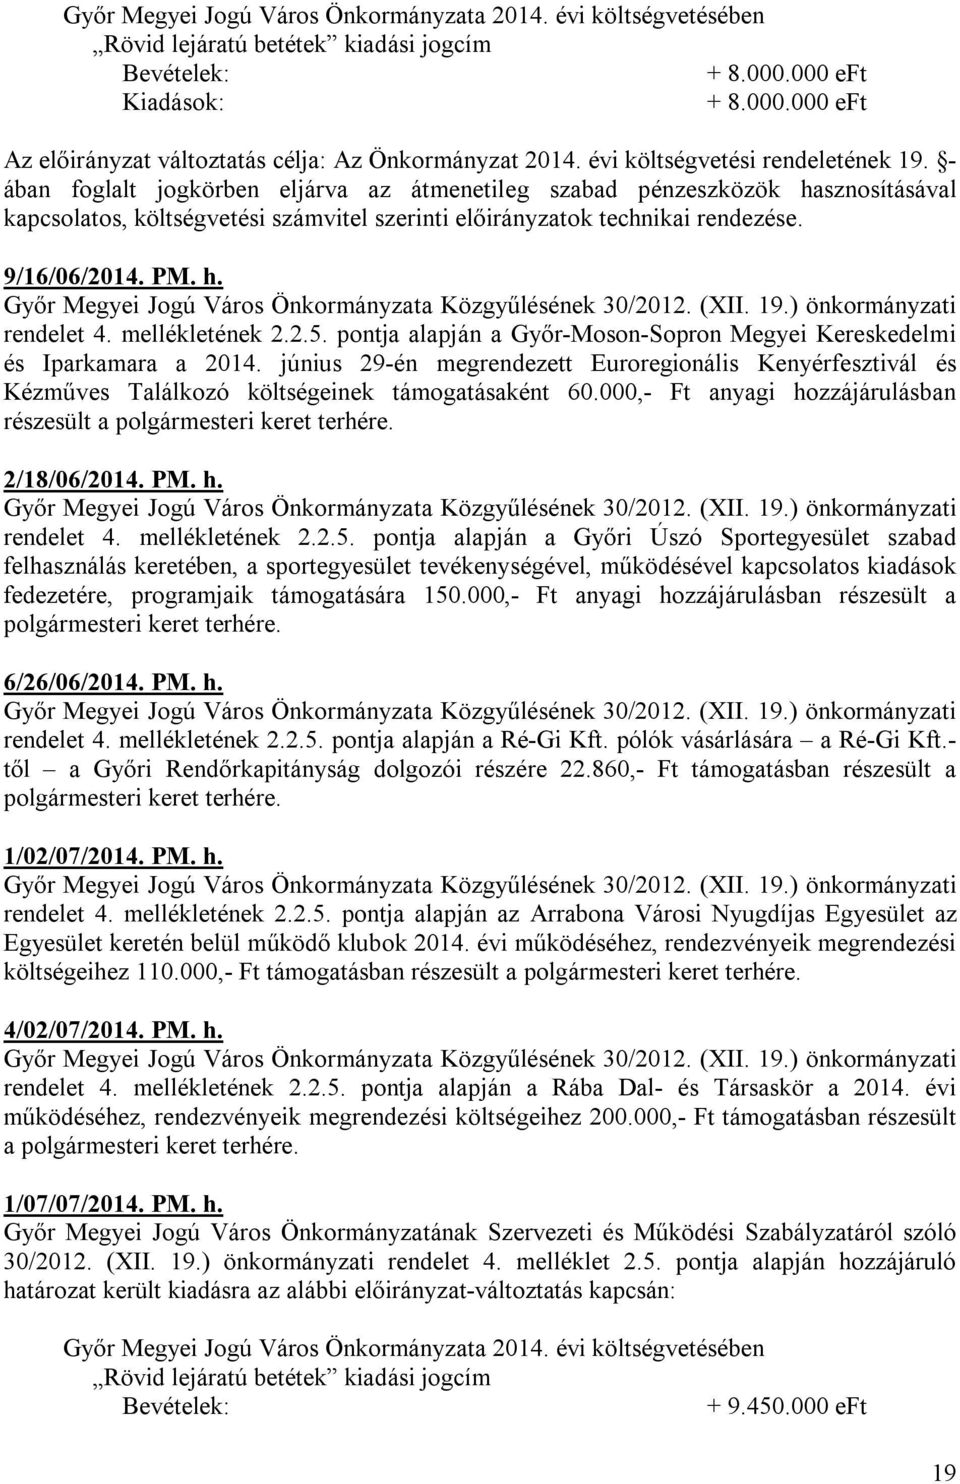 9/16/06/2014. PM. h. rendelet 4. mellékletének 2.2.5. pontja alapján a Győr-Moson-Sopron Megyei Kereskedelmi és Iparkamara a 2014.